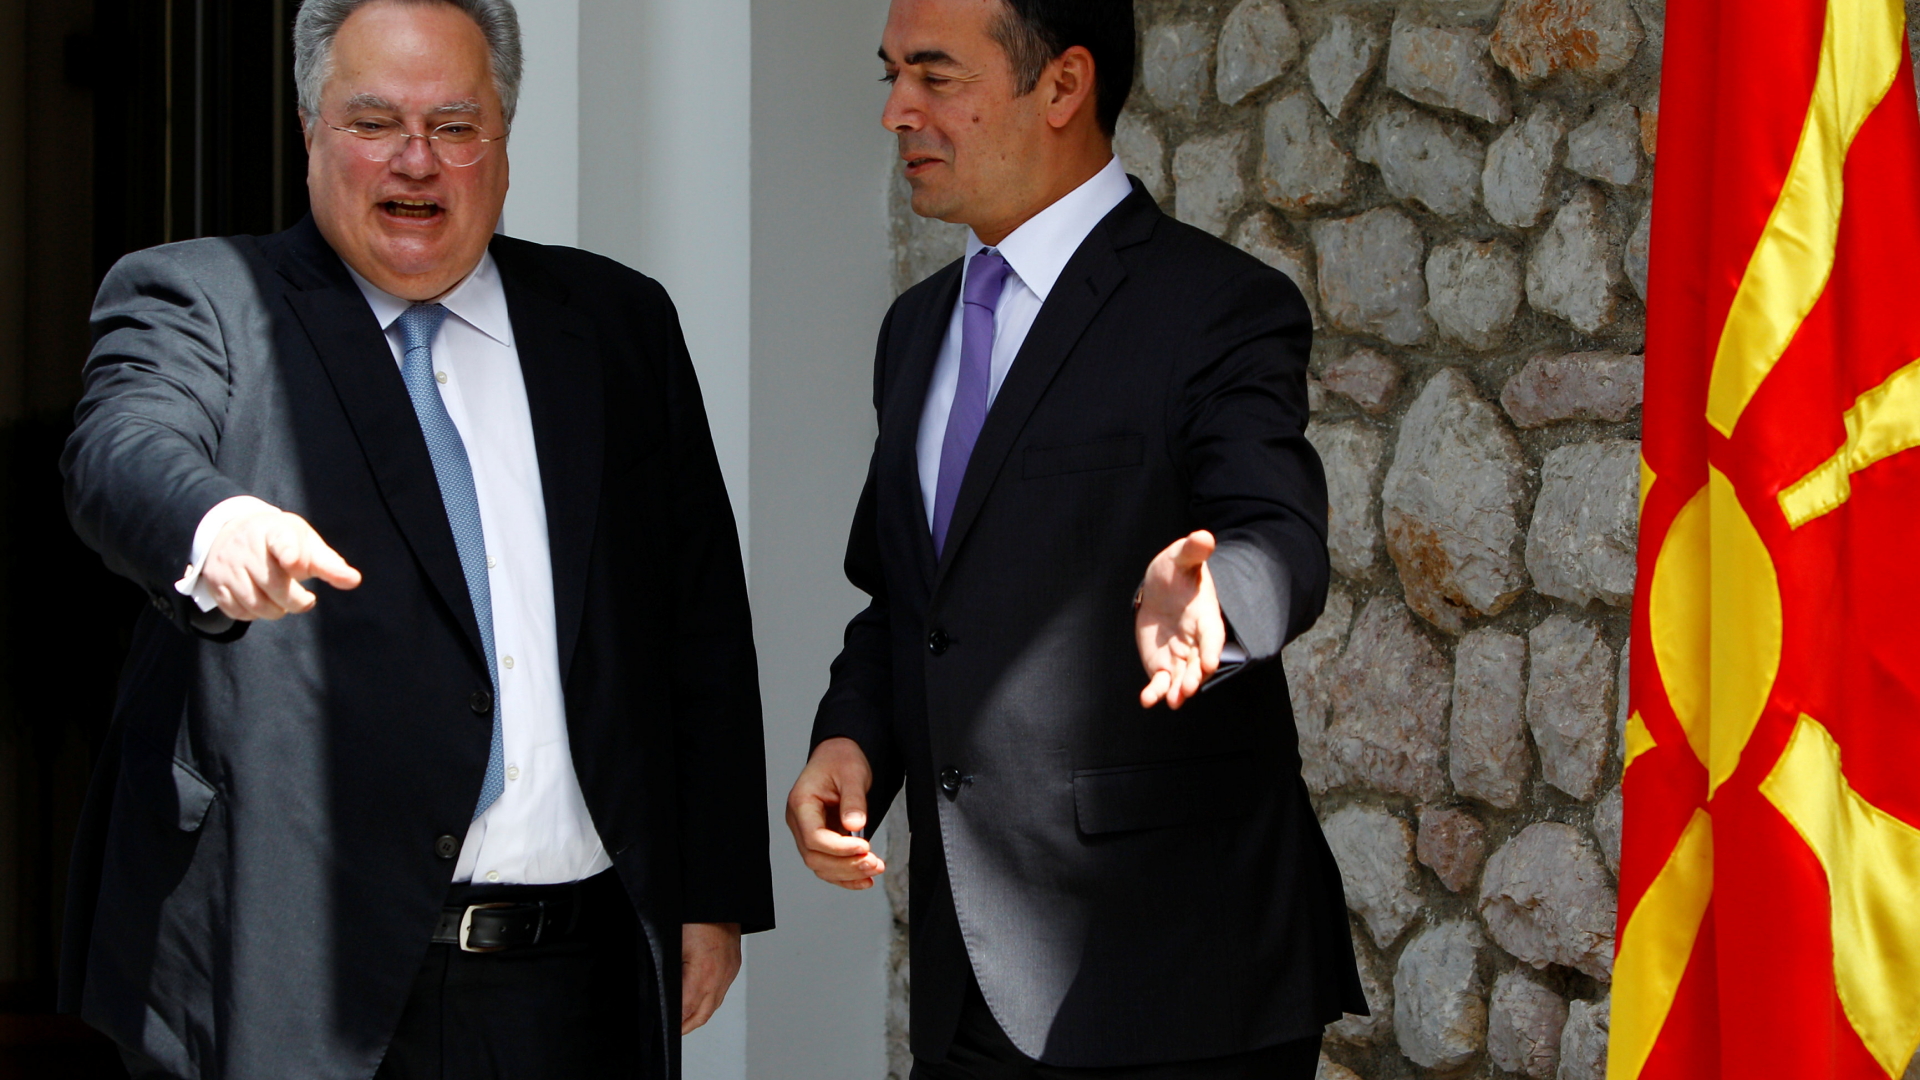 Die Außenminister von Griechenland und Mazedonien, Kotzias und Dimitrov | REUTERS